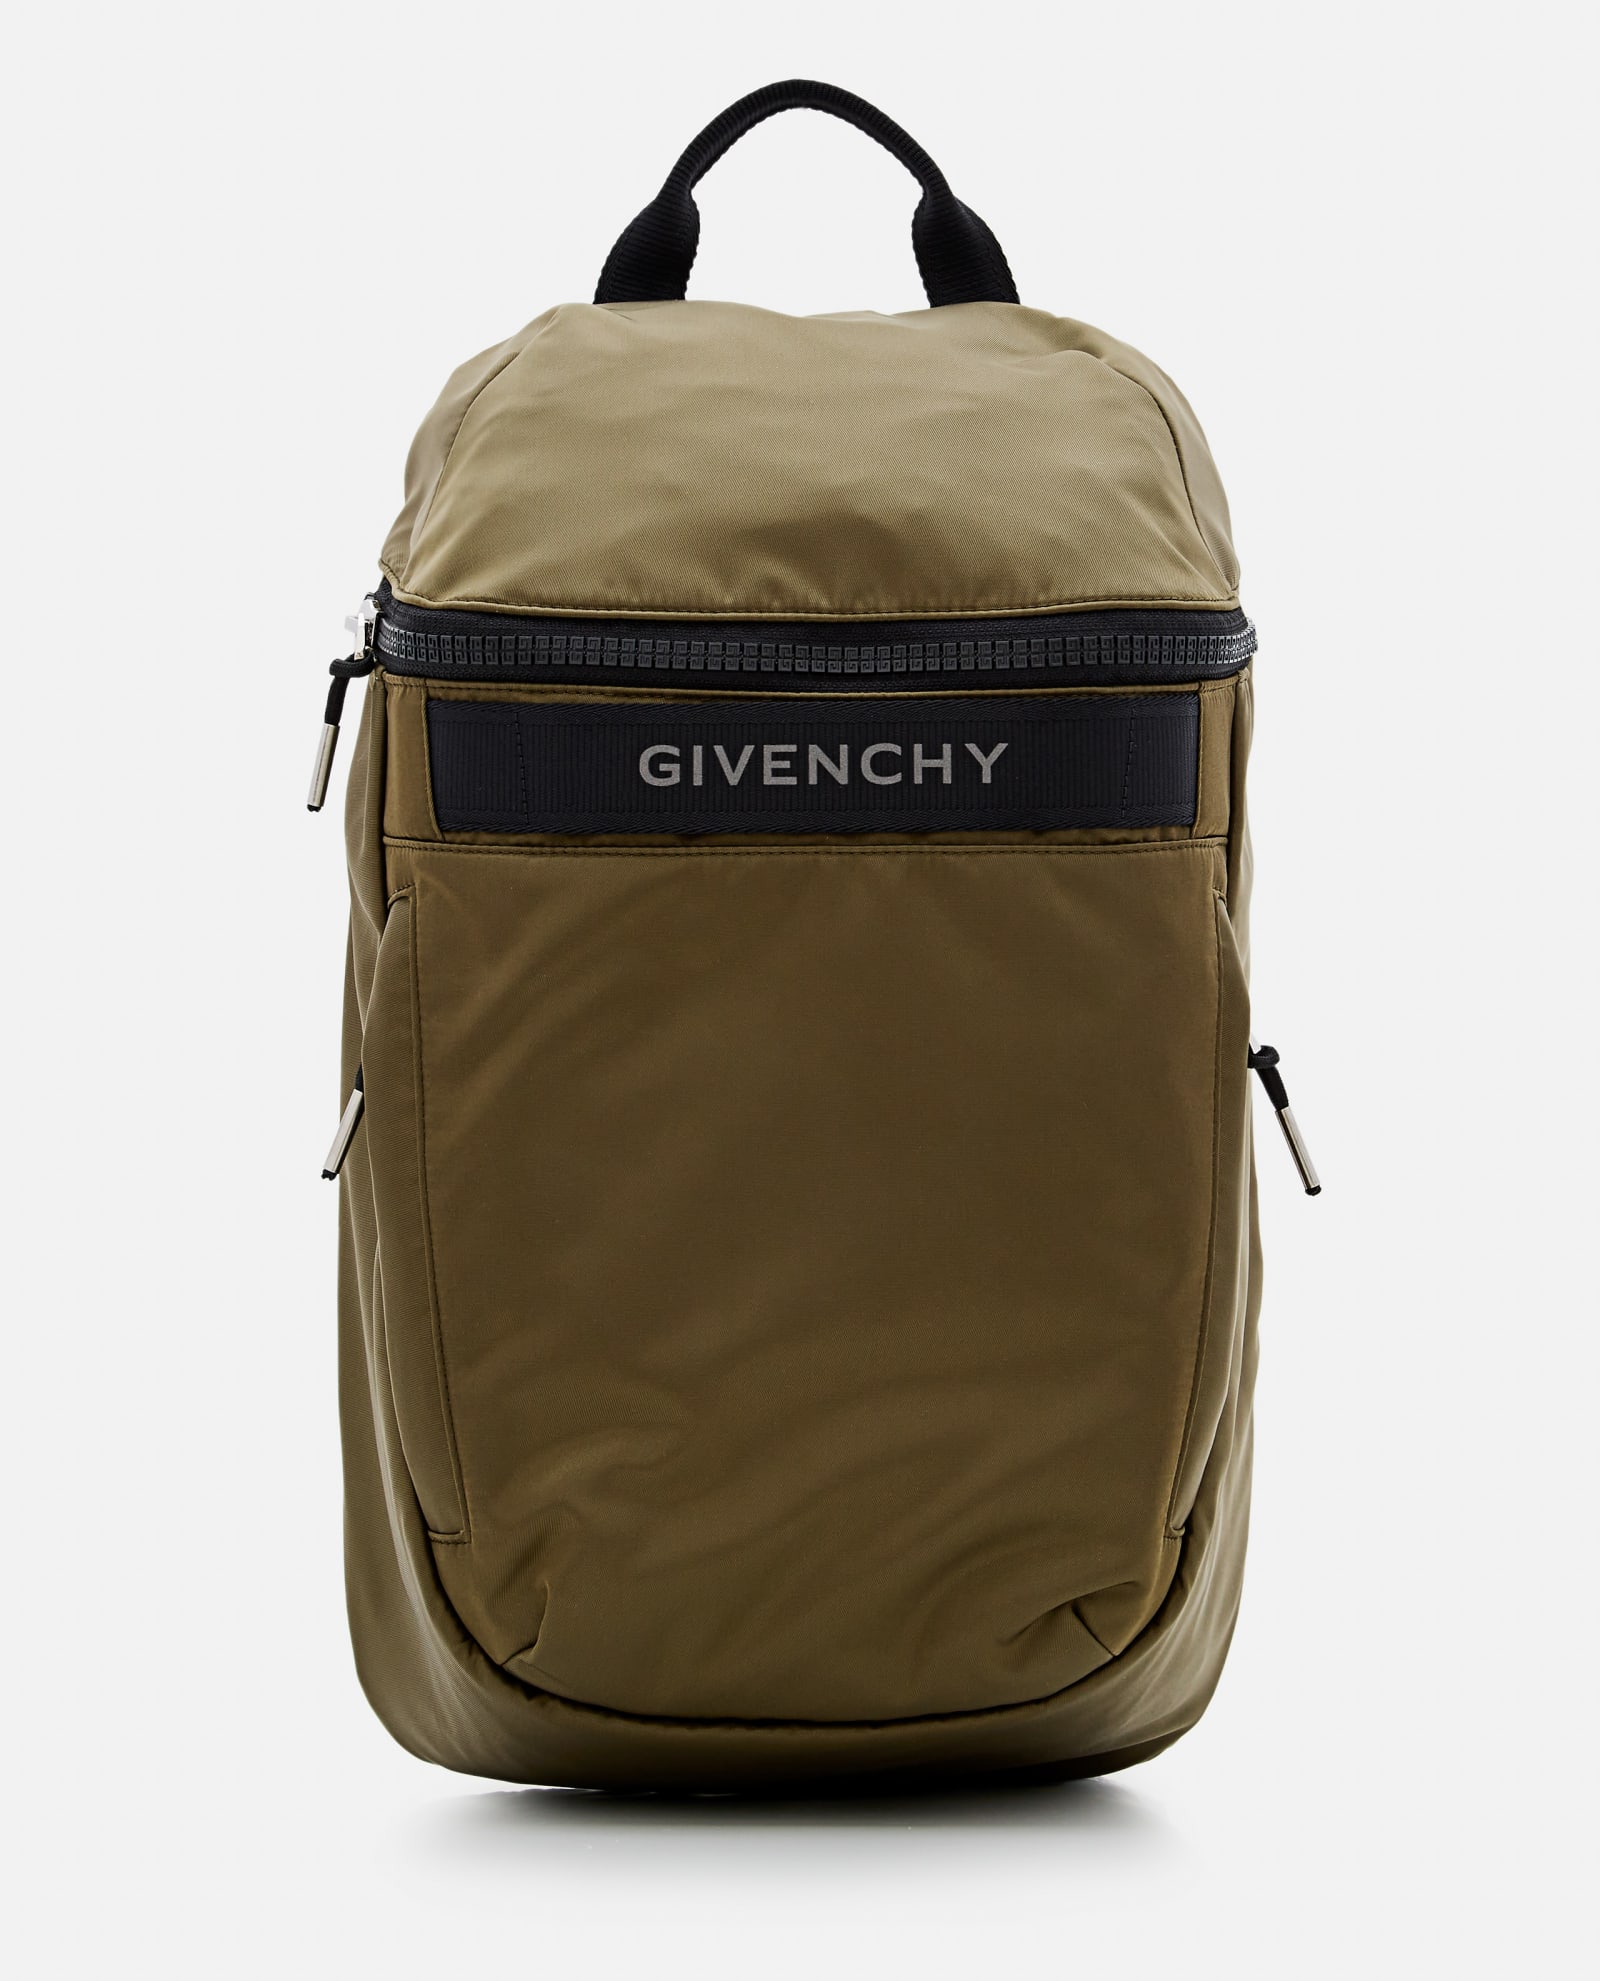 Givenchy G-trek Backpack